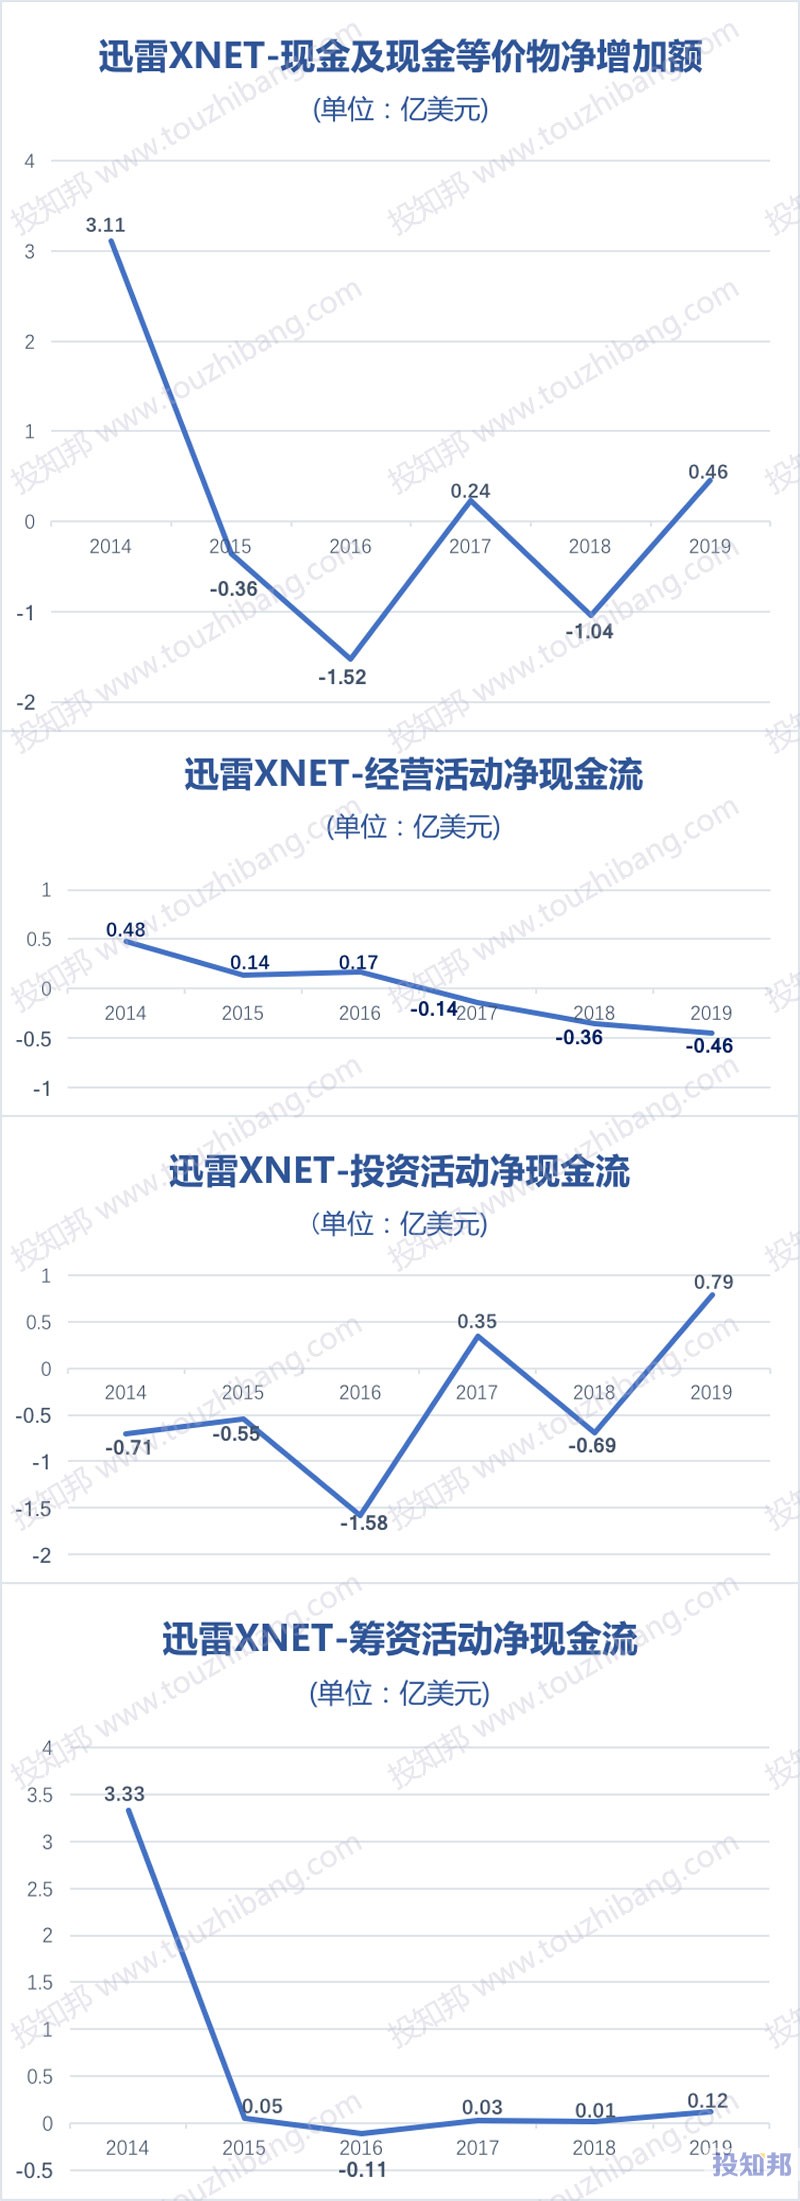 迅雷(XNET)财报数据图示(2014~2020年Q3，更新)